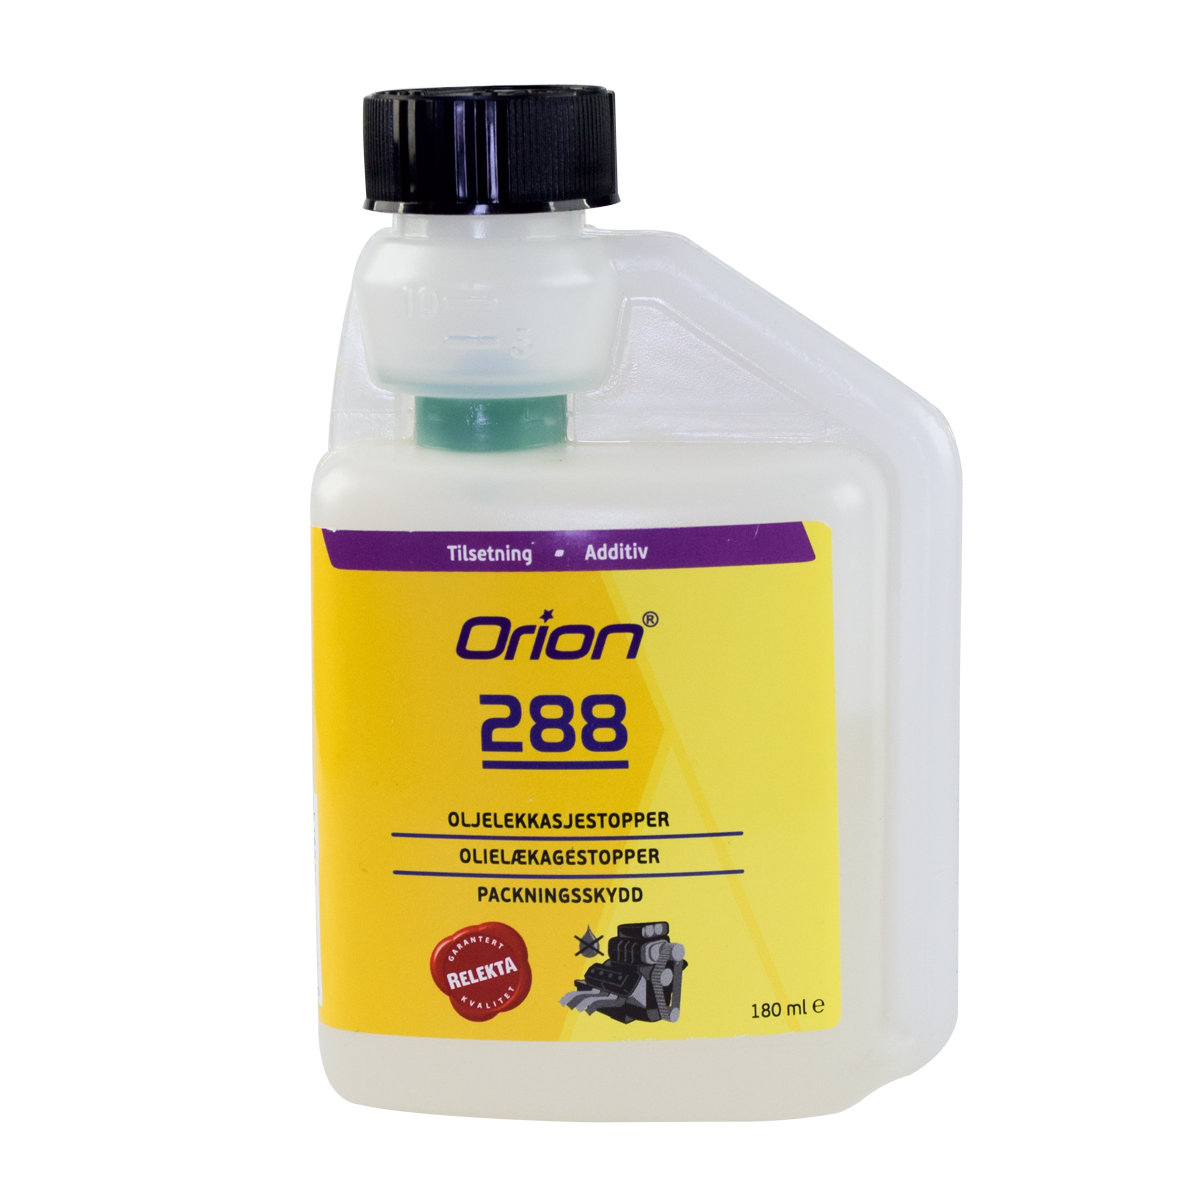 Orion 288 oljelekkasjestopper